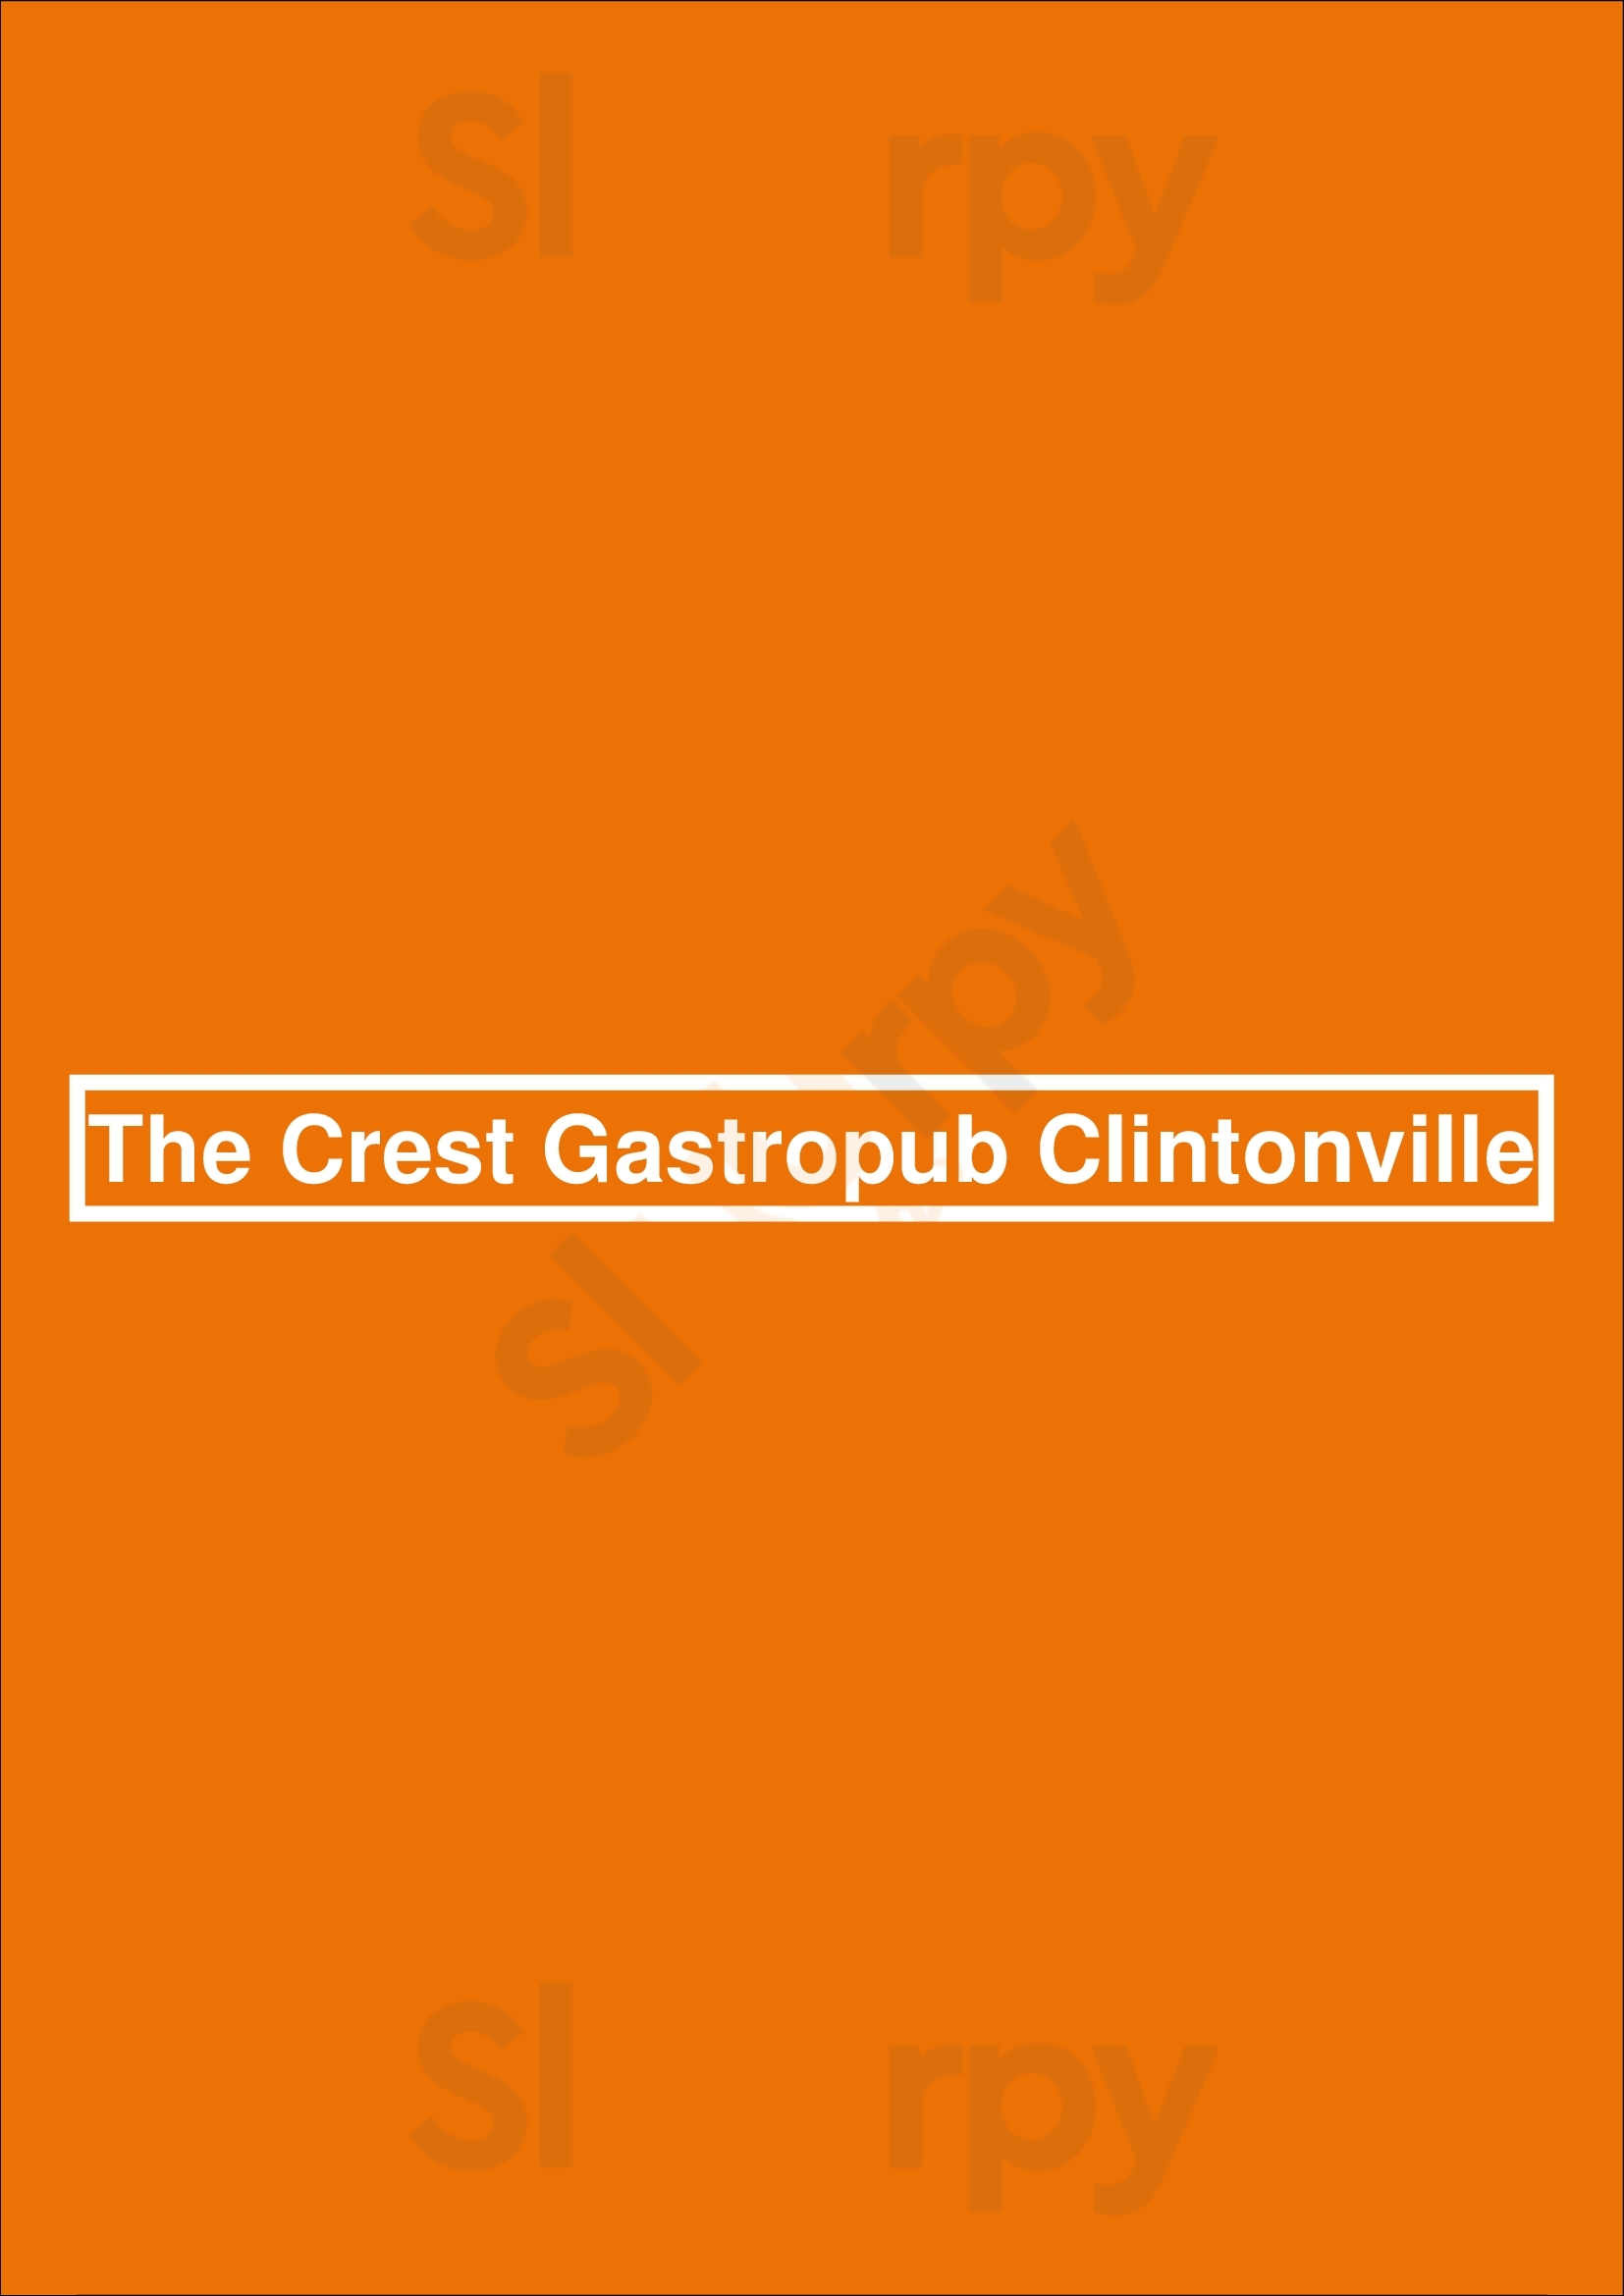 The Crest Gastropub Columbus Menu - 1